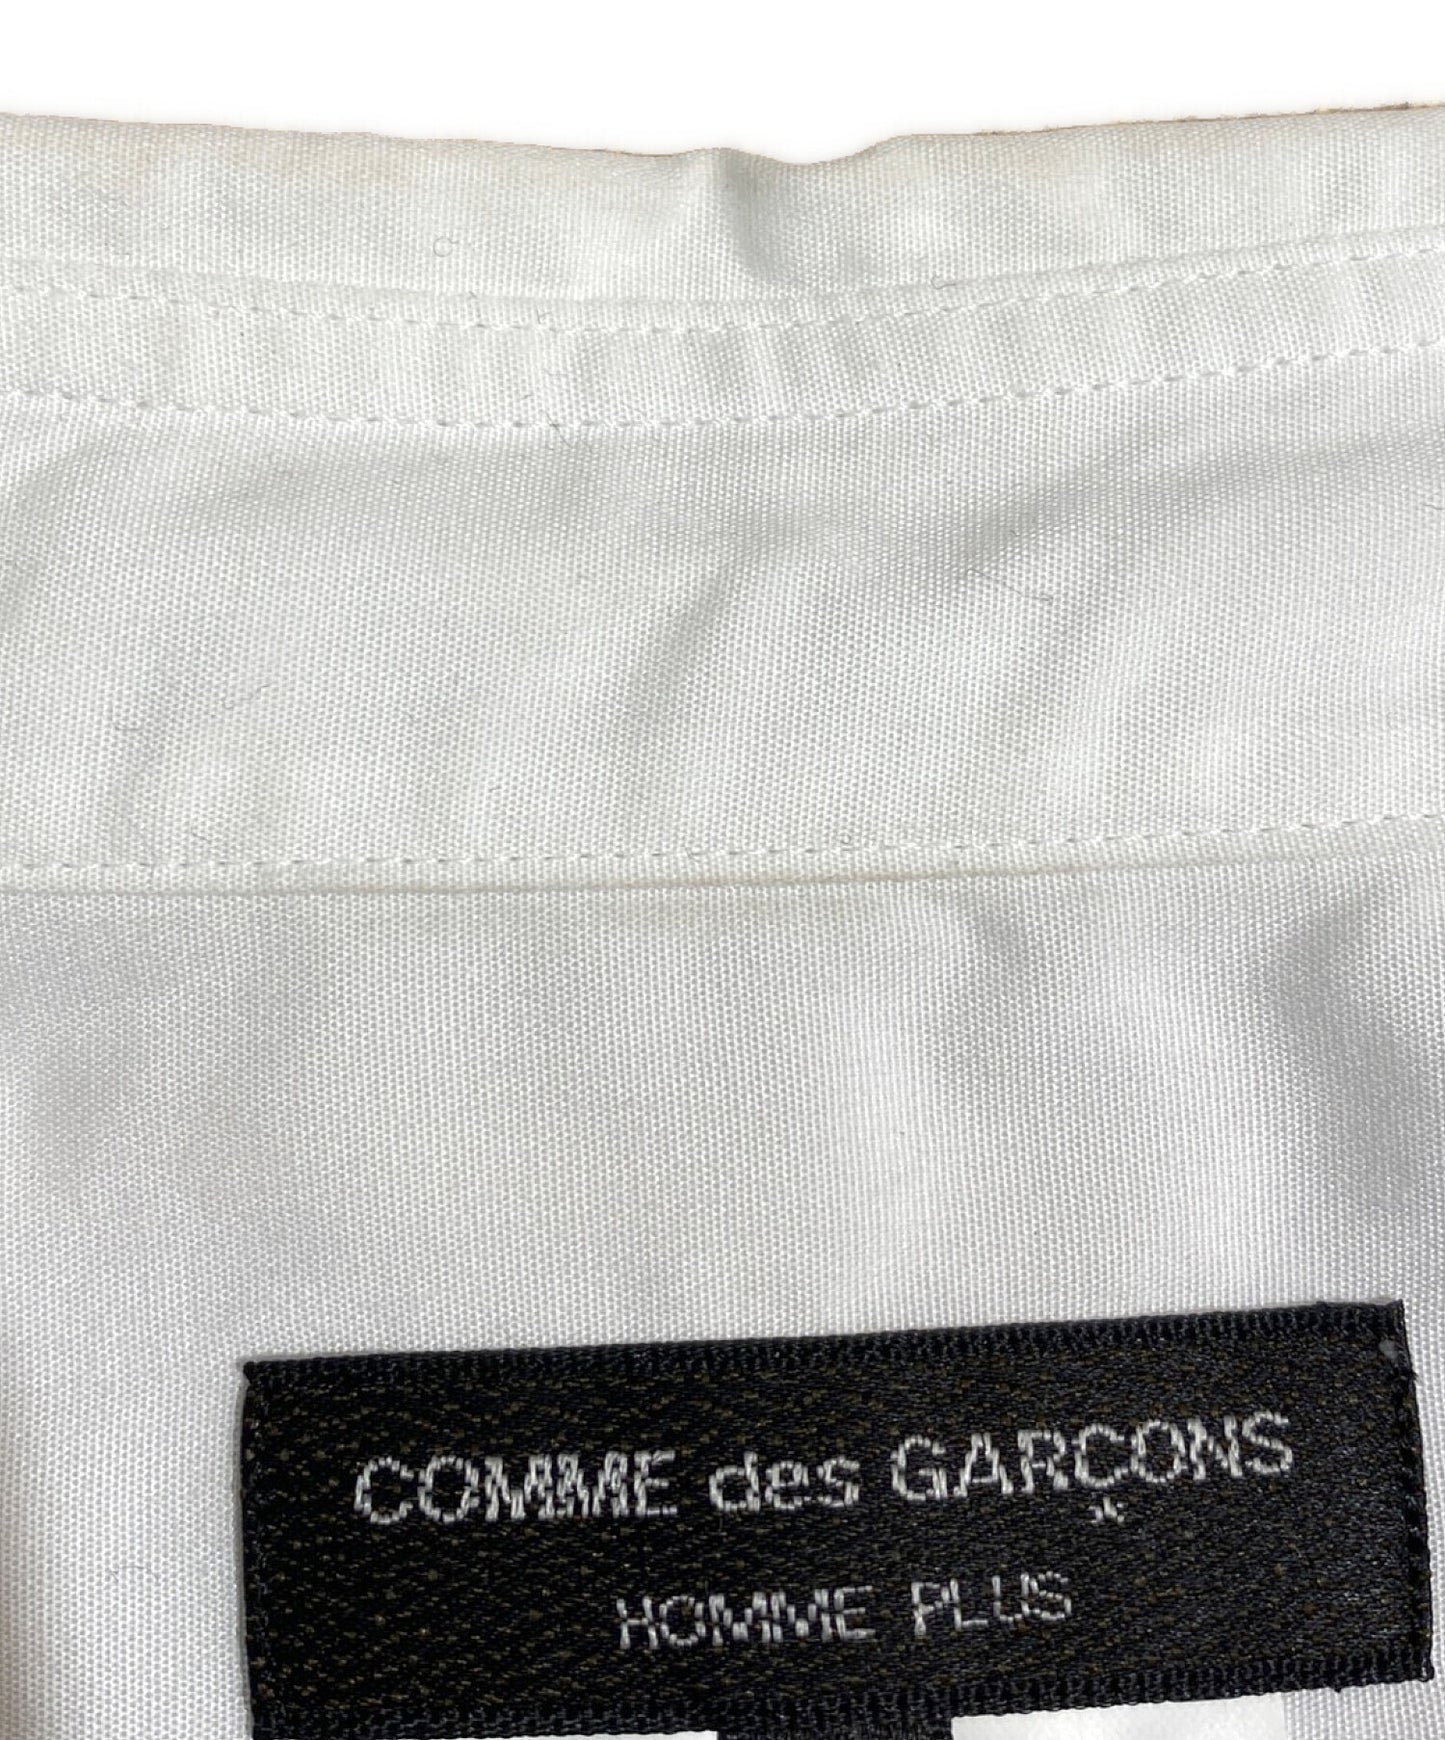 Comme des Garcons Homme Plus条纹长衬衫AD2022 PK-B019